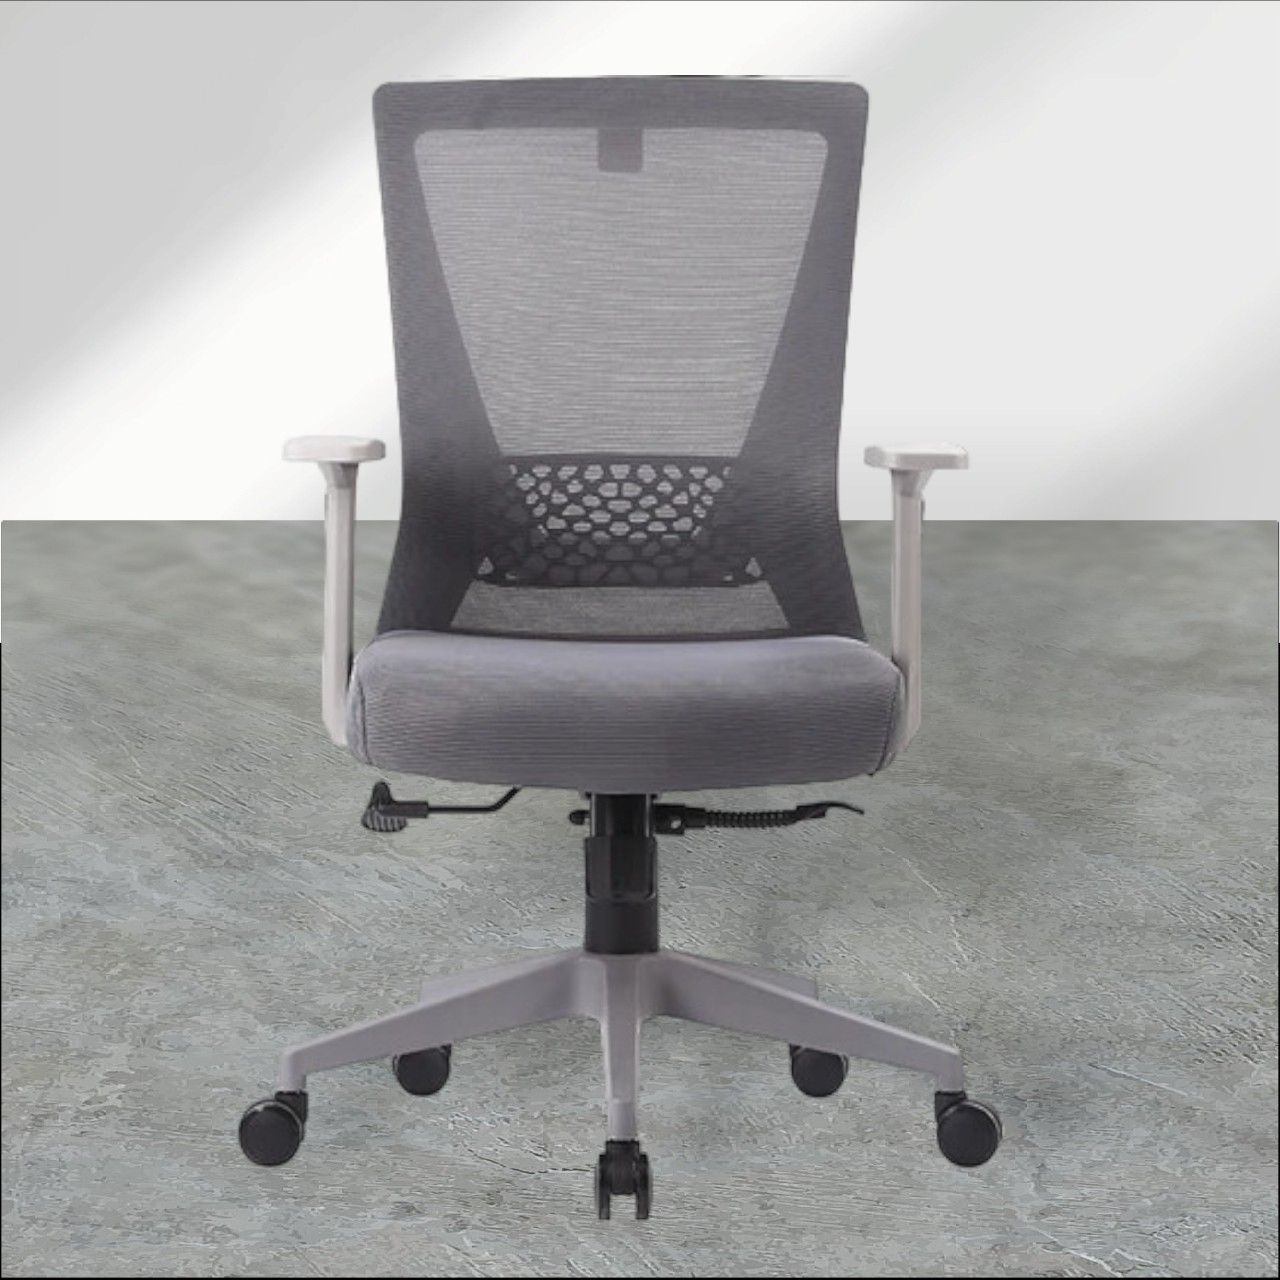 Chân ghế nhựa PP hoặc chân sắt mạ crom